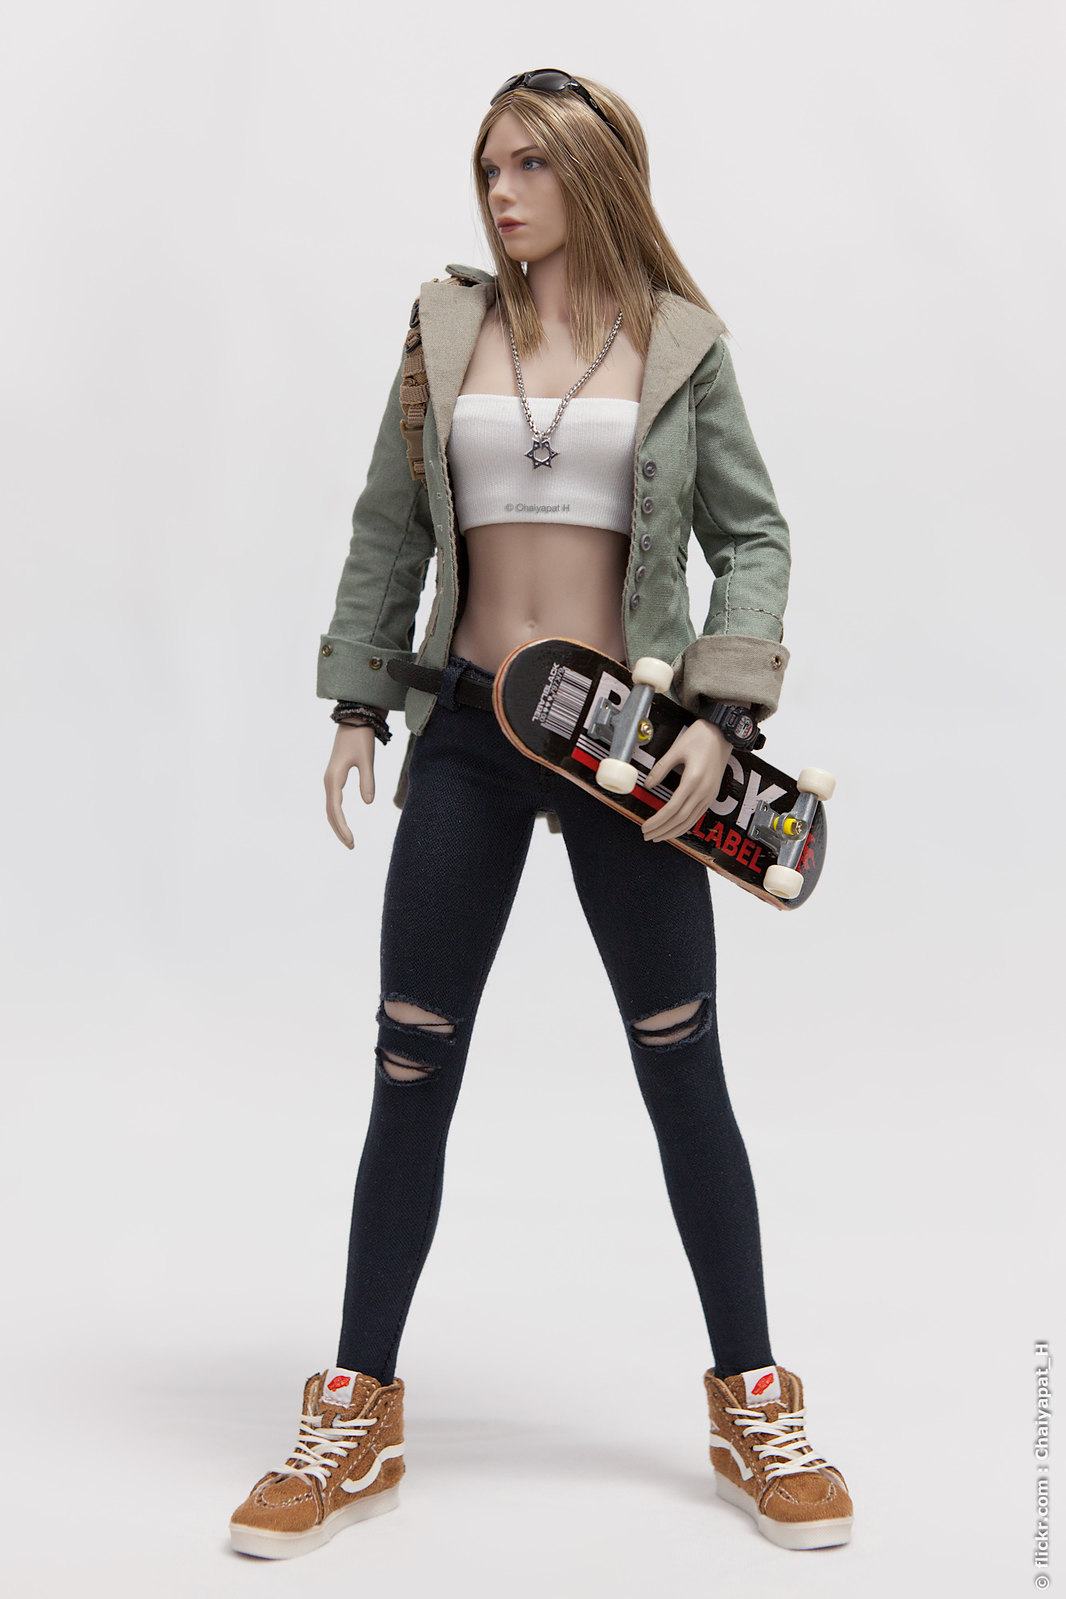 cara - Skater Girl 41775305602_a9c84c7459_h